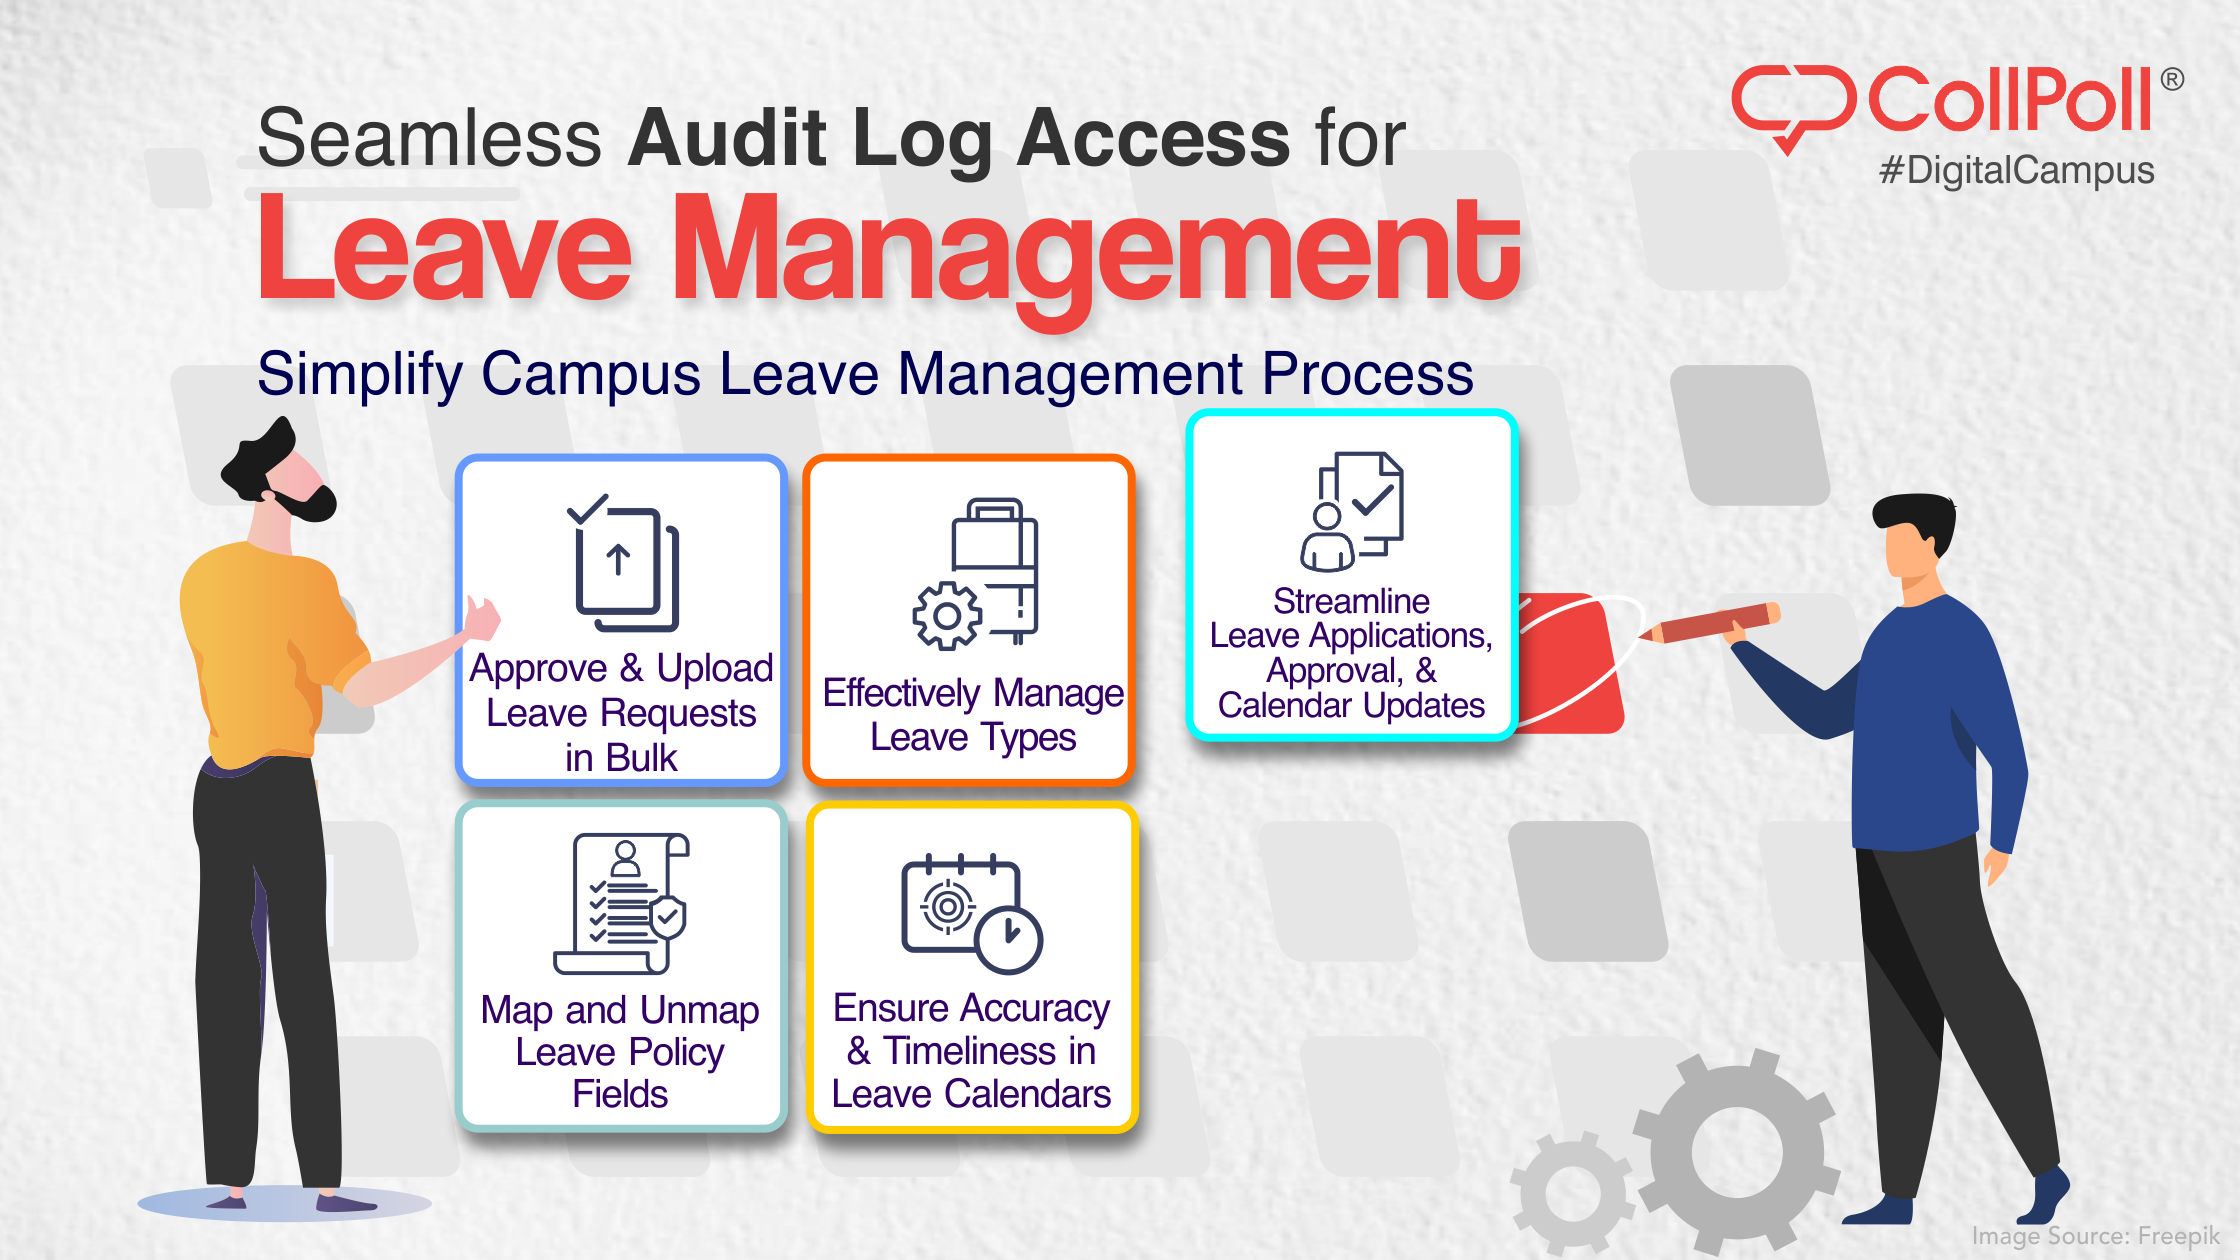 Effortlessly Access Audit Logs for Leave Management